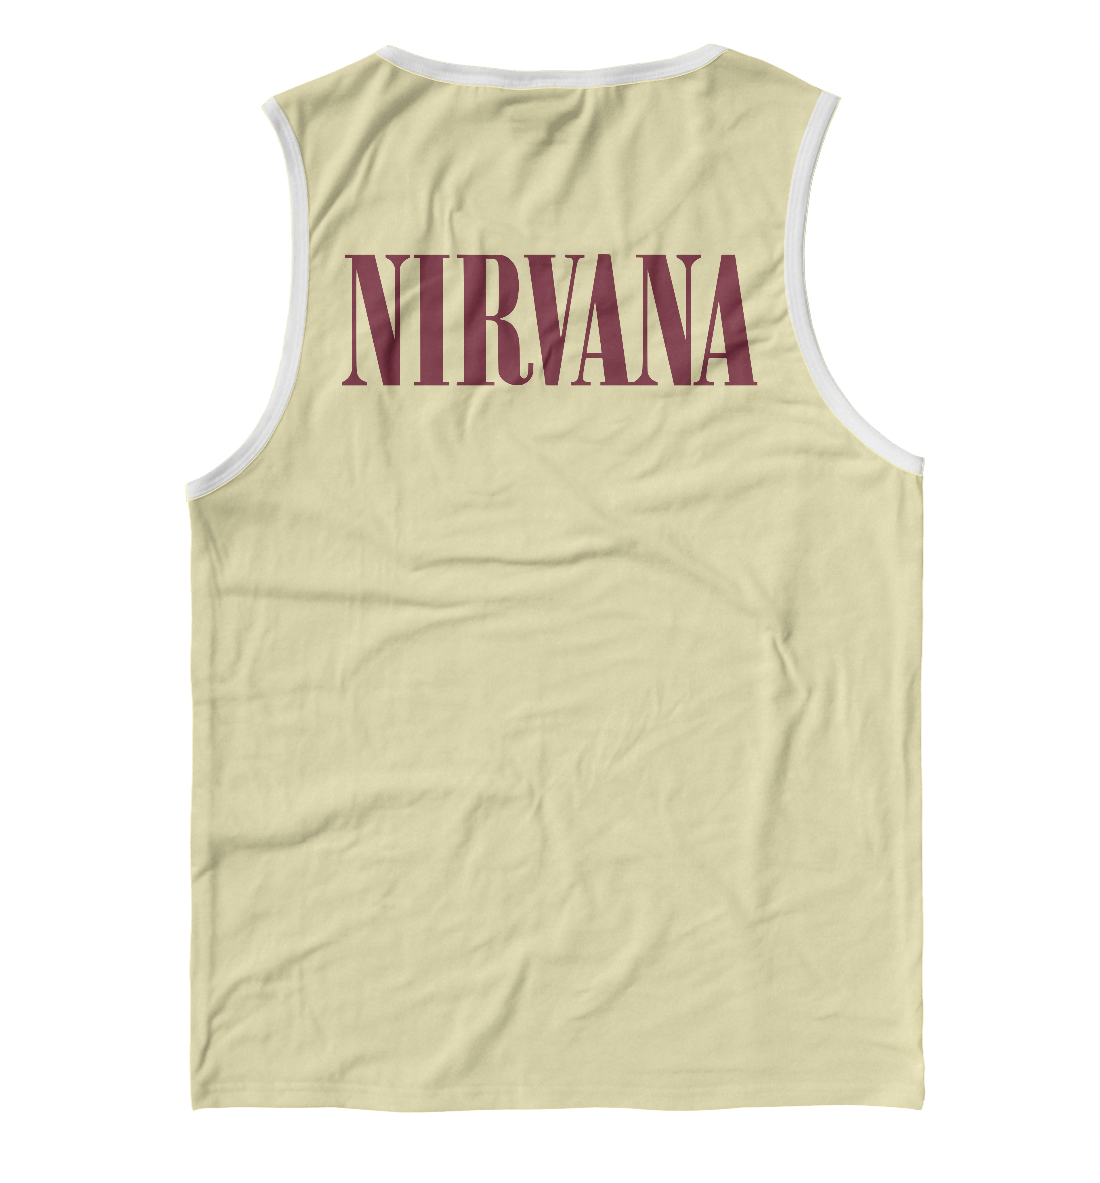 Мужская майка с принтом Nirvana (In Utero)  - фото 2-спина